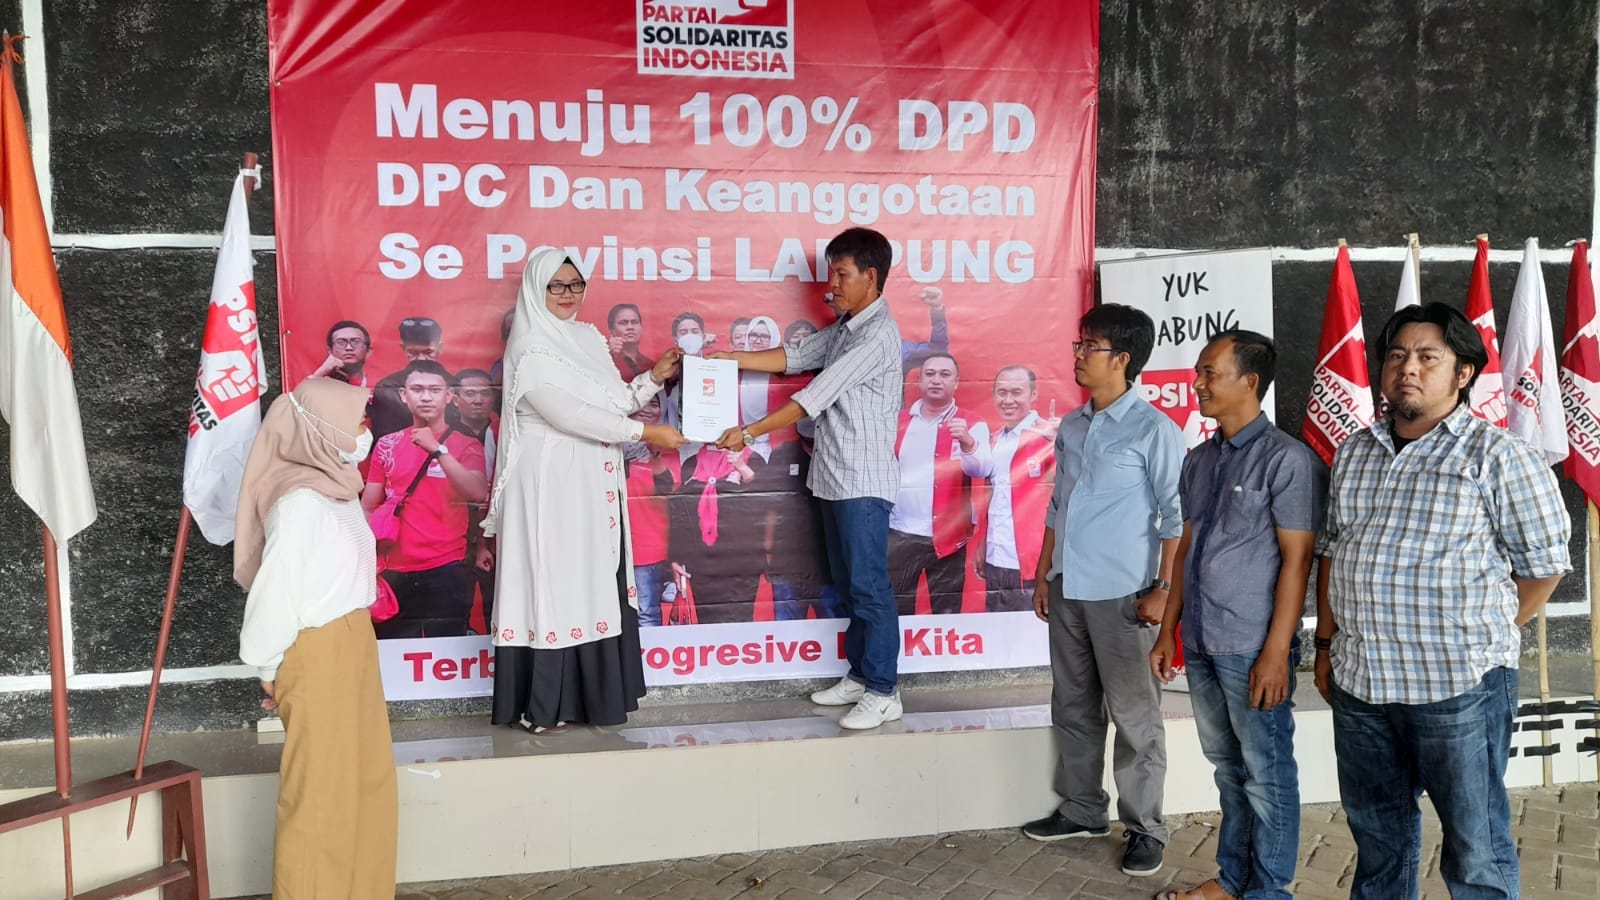 Diawali Dari Metro, DPW PSI Lampung Mulai Lengkapi Berkas Verifikasi